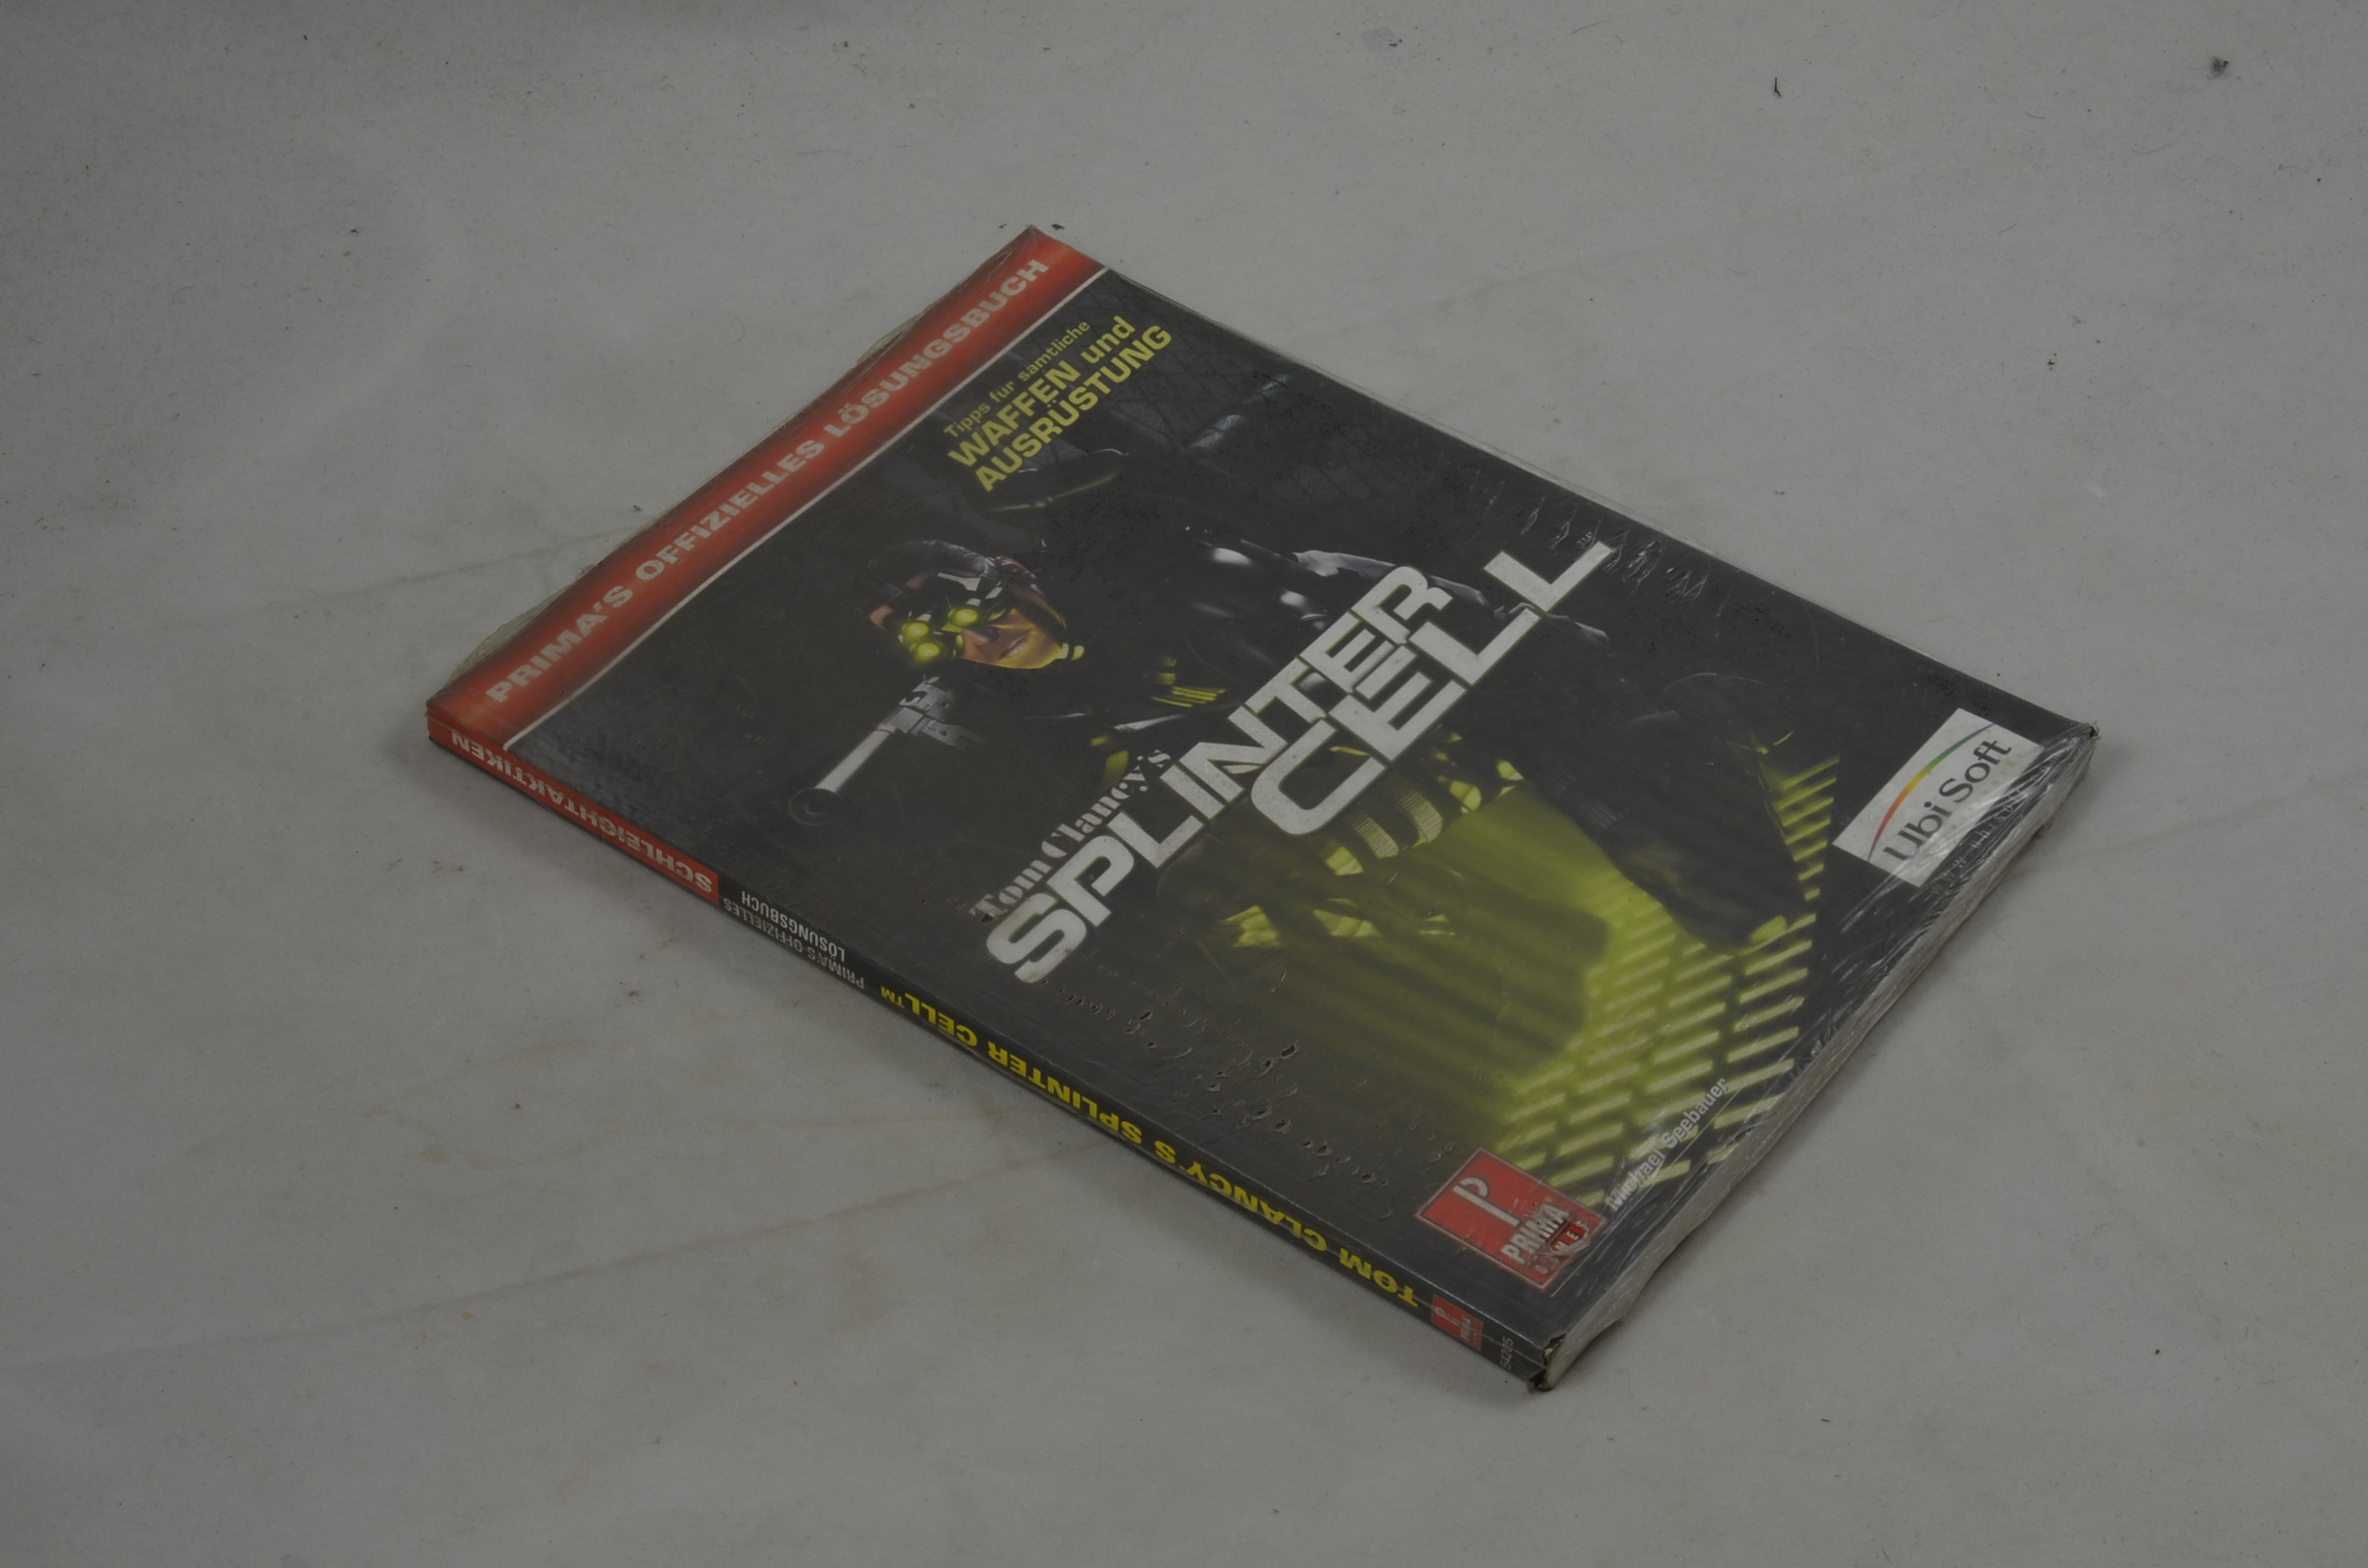 Produktbild von Tom Clancy's Splinter Cell Spielberater